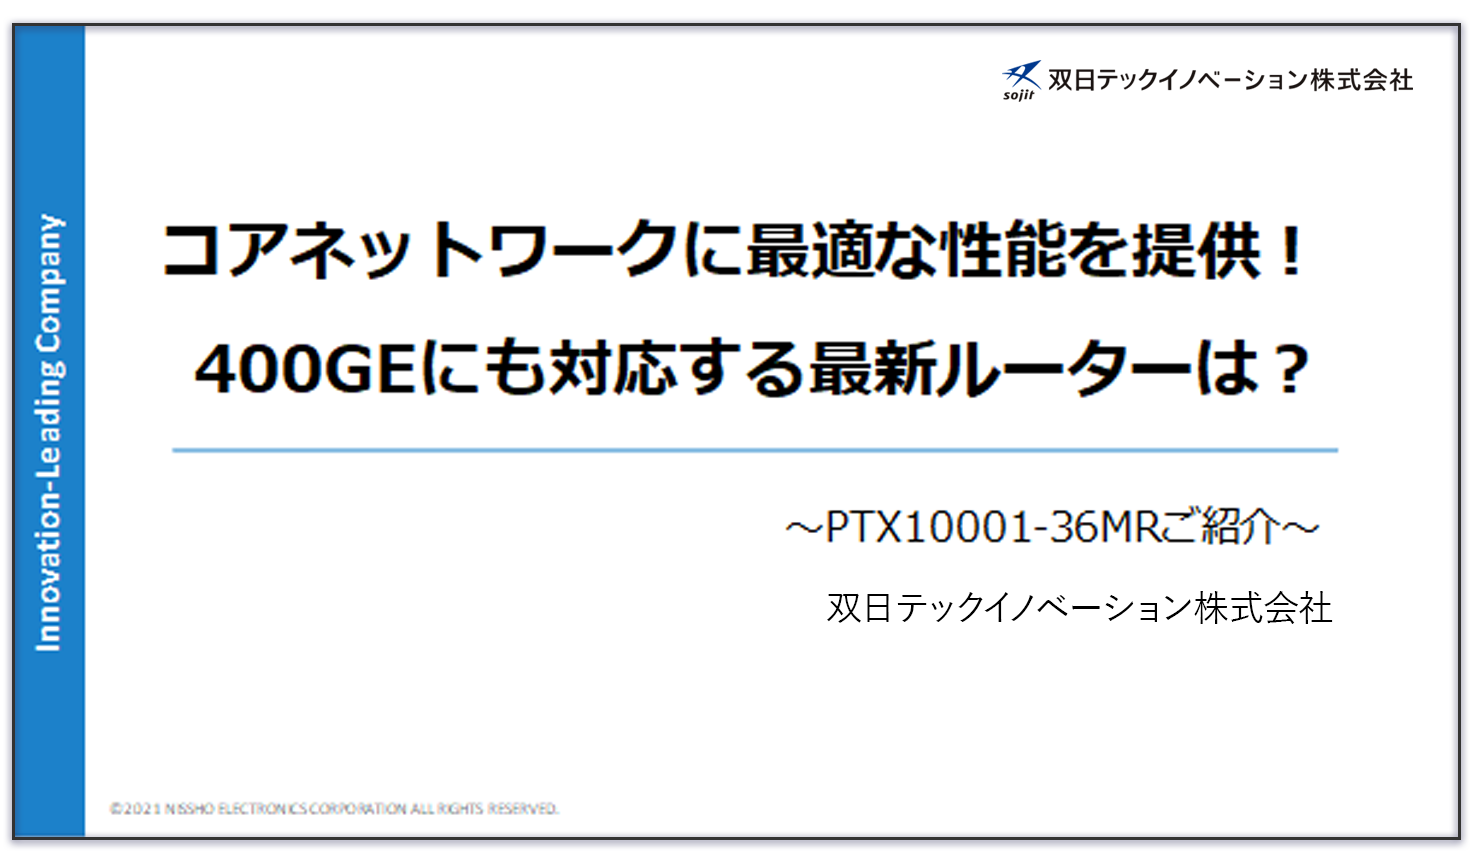 PTX10001-36MRご紹介資料